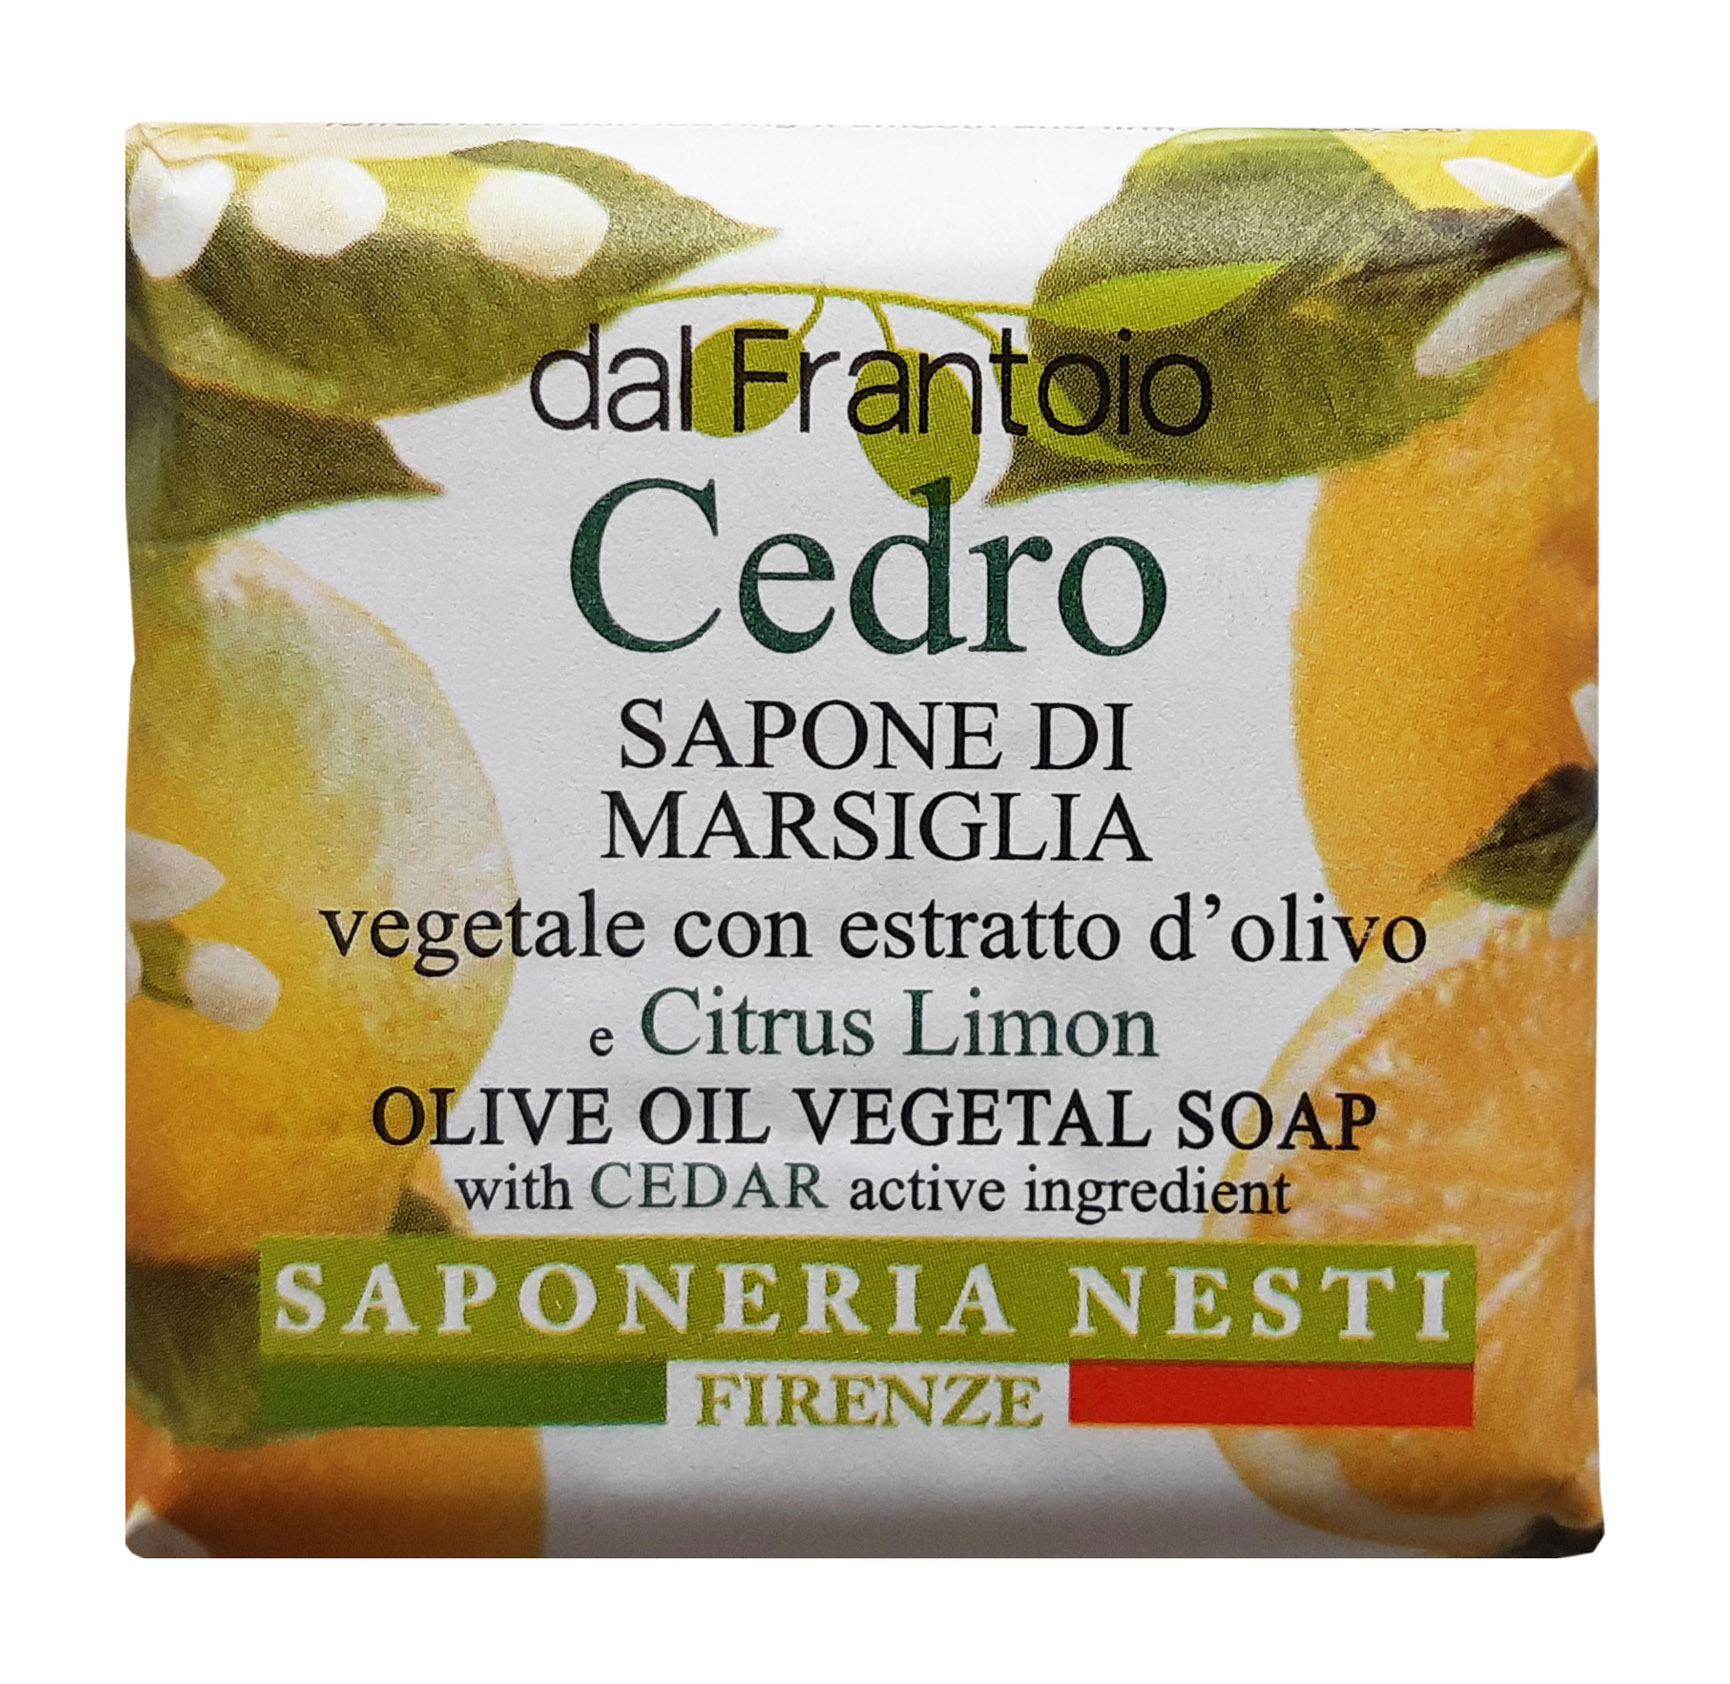 Мыло NESTI DANTE Dal Frantoio Cedro Olive Oil Vegetal Soap 100 г nesti dante мыло il frutteto pure olive